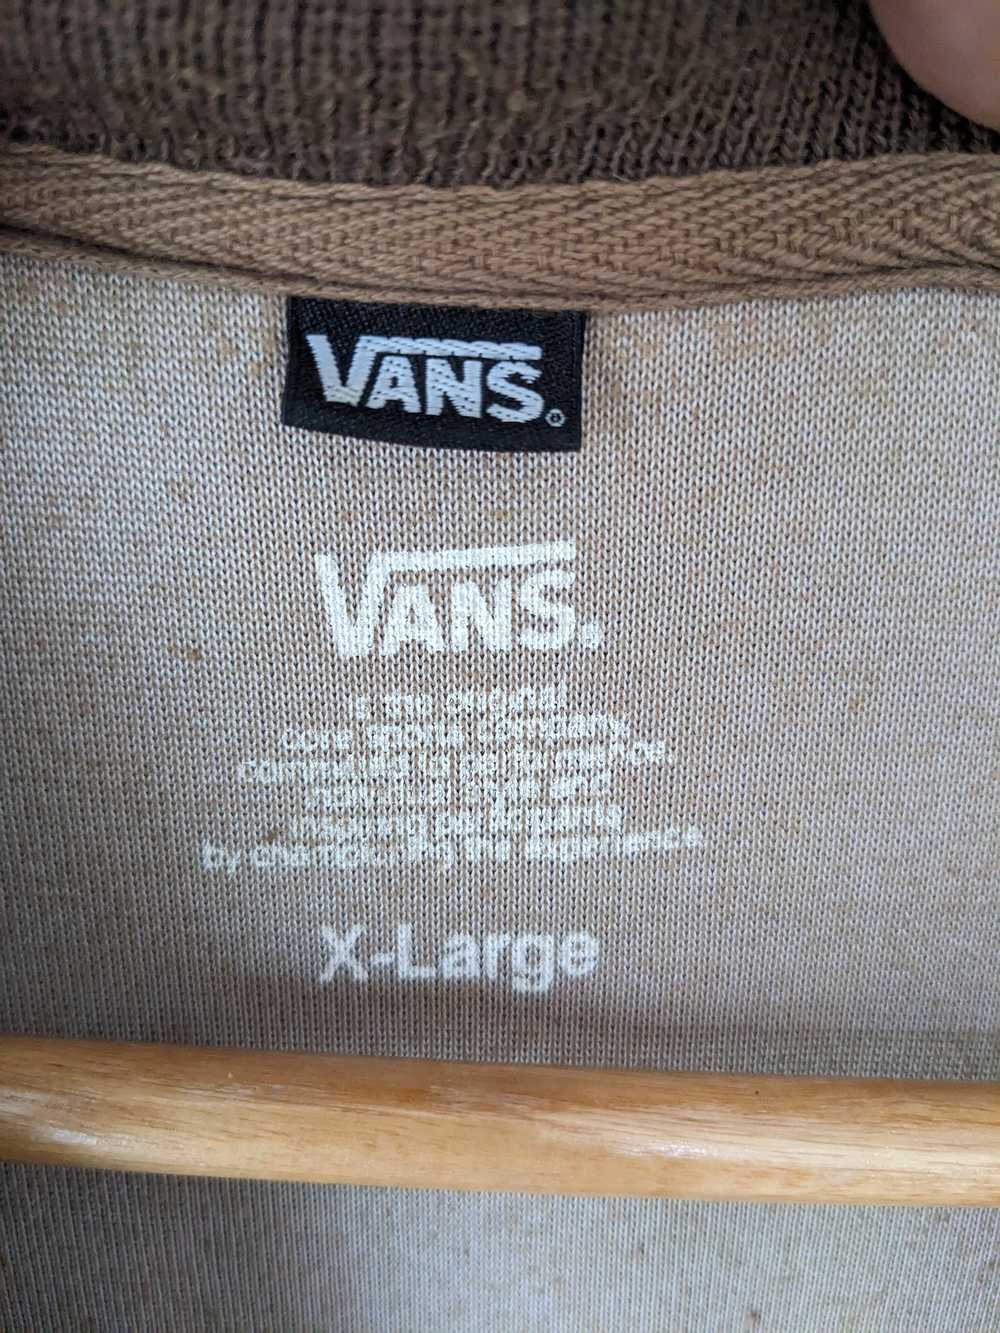 Brand × Skategang × Vans Vintage Vans Jacket Brow… - image 3